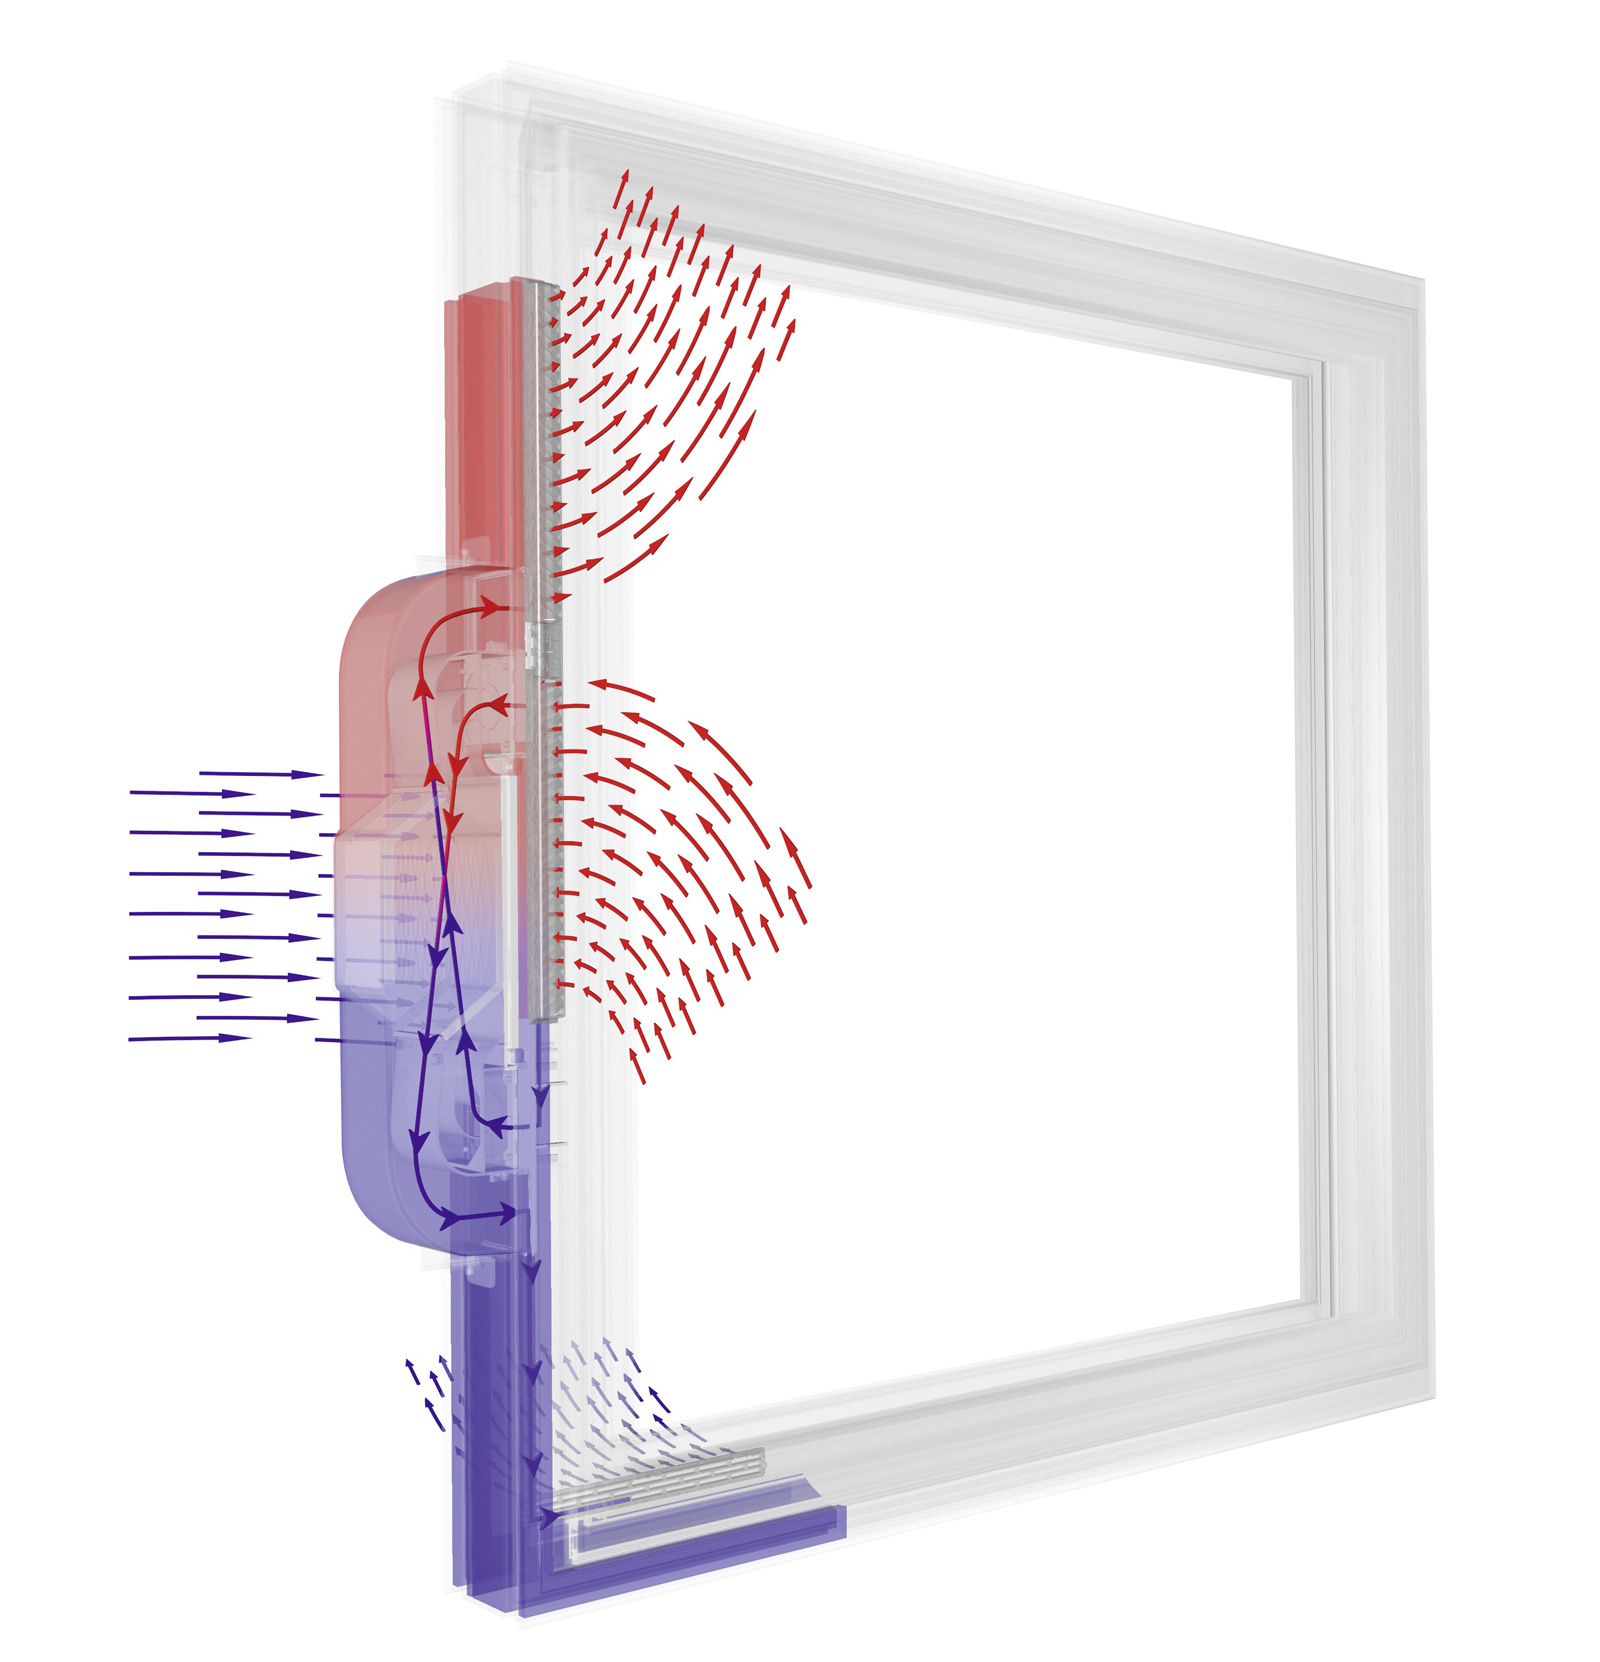 Internorm I tec Vetranie je integrované priamo do rámu okna zabezpečuje 24 hodín čerstvý vzduch a optimálnu vnutornú klímu.